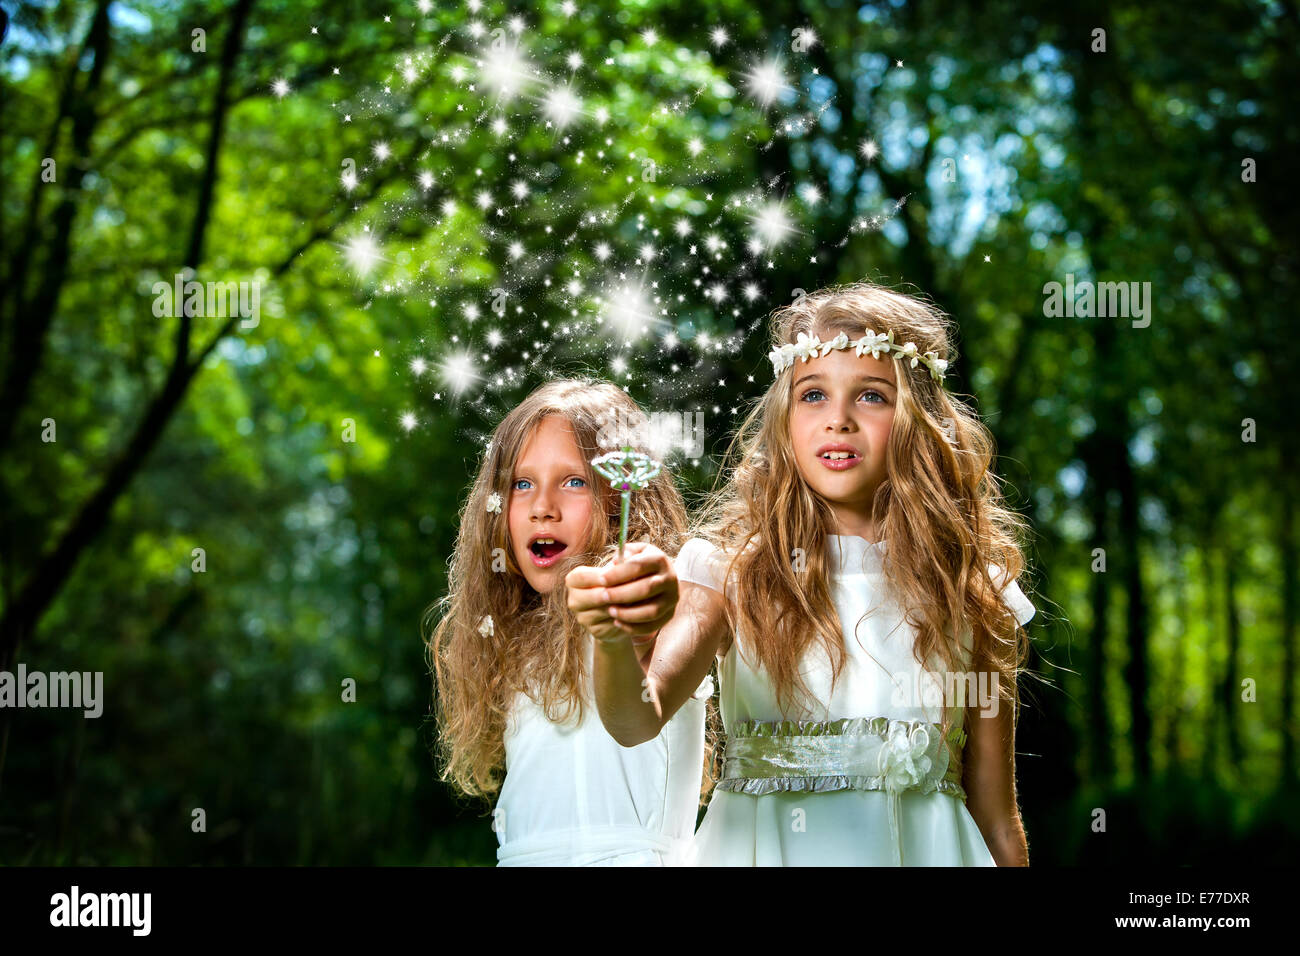 Ritratto di fantasia di cute ragazze con la bacchetta magica nella foresta. Foto Stock